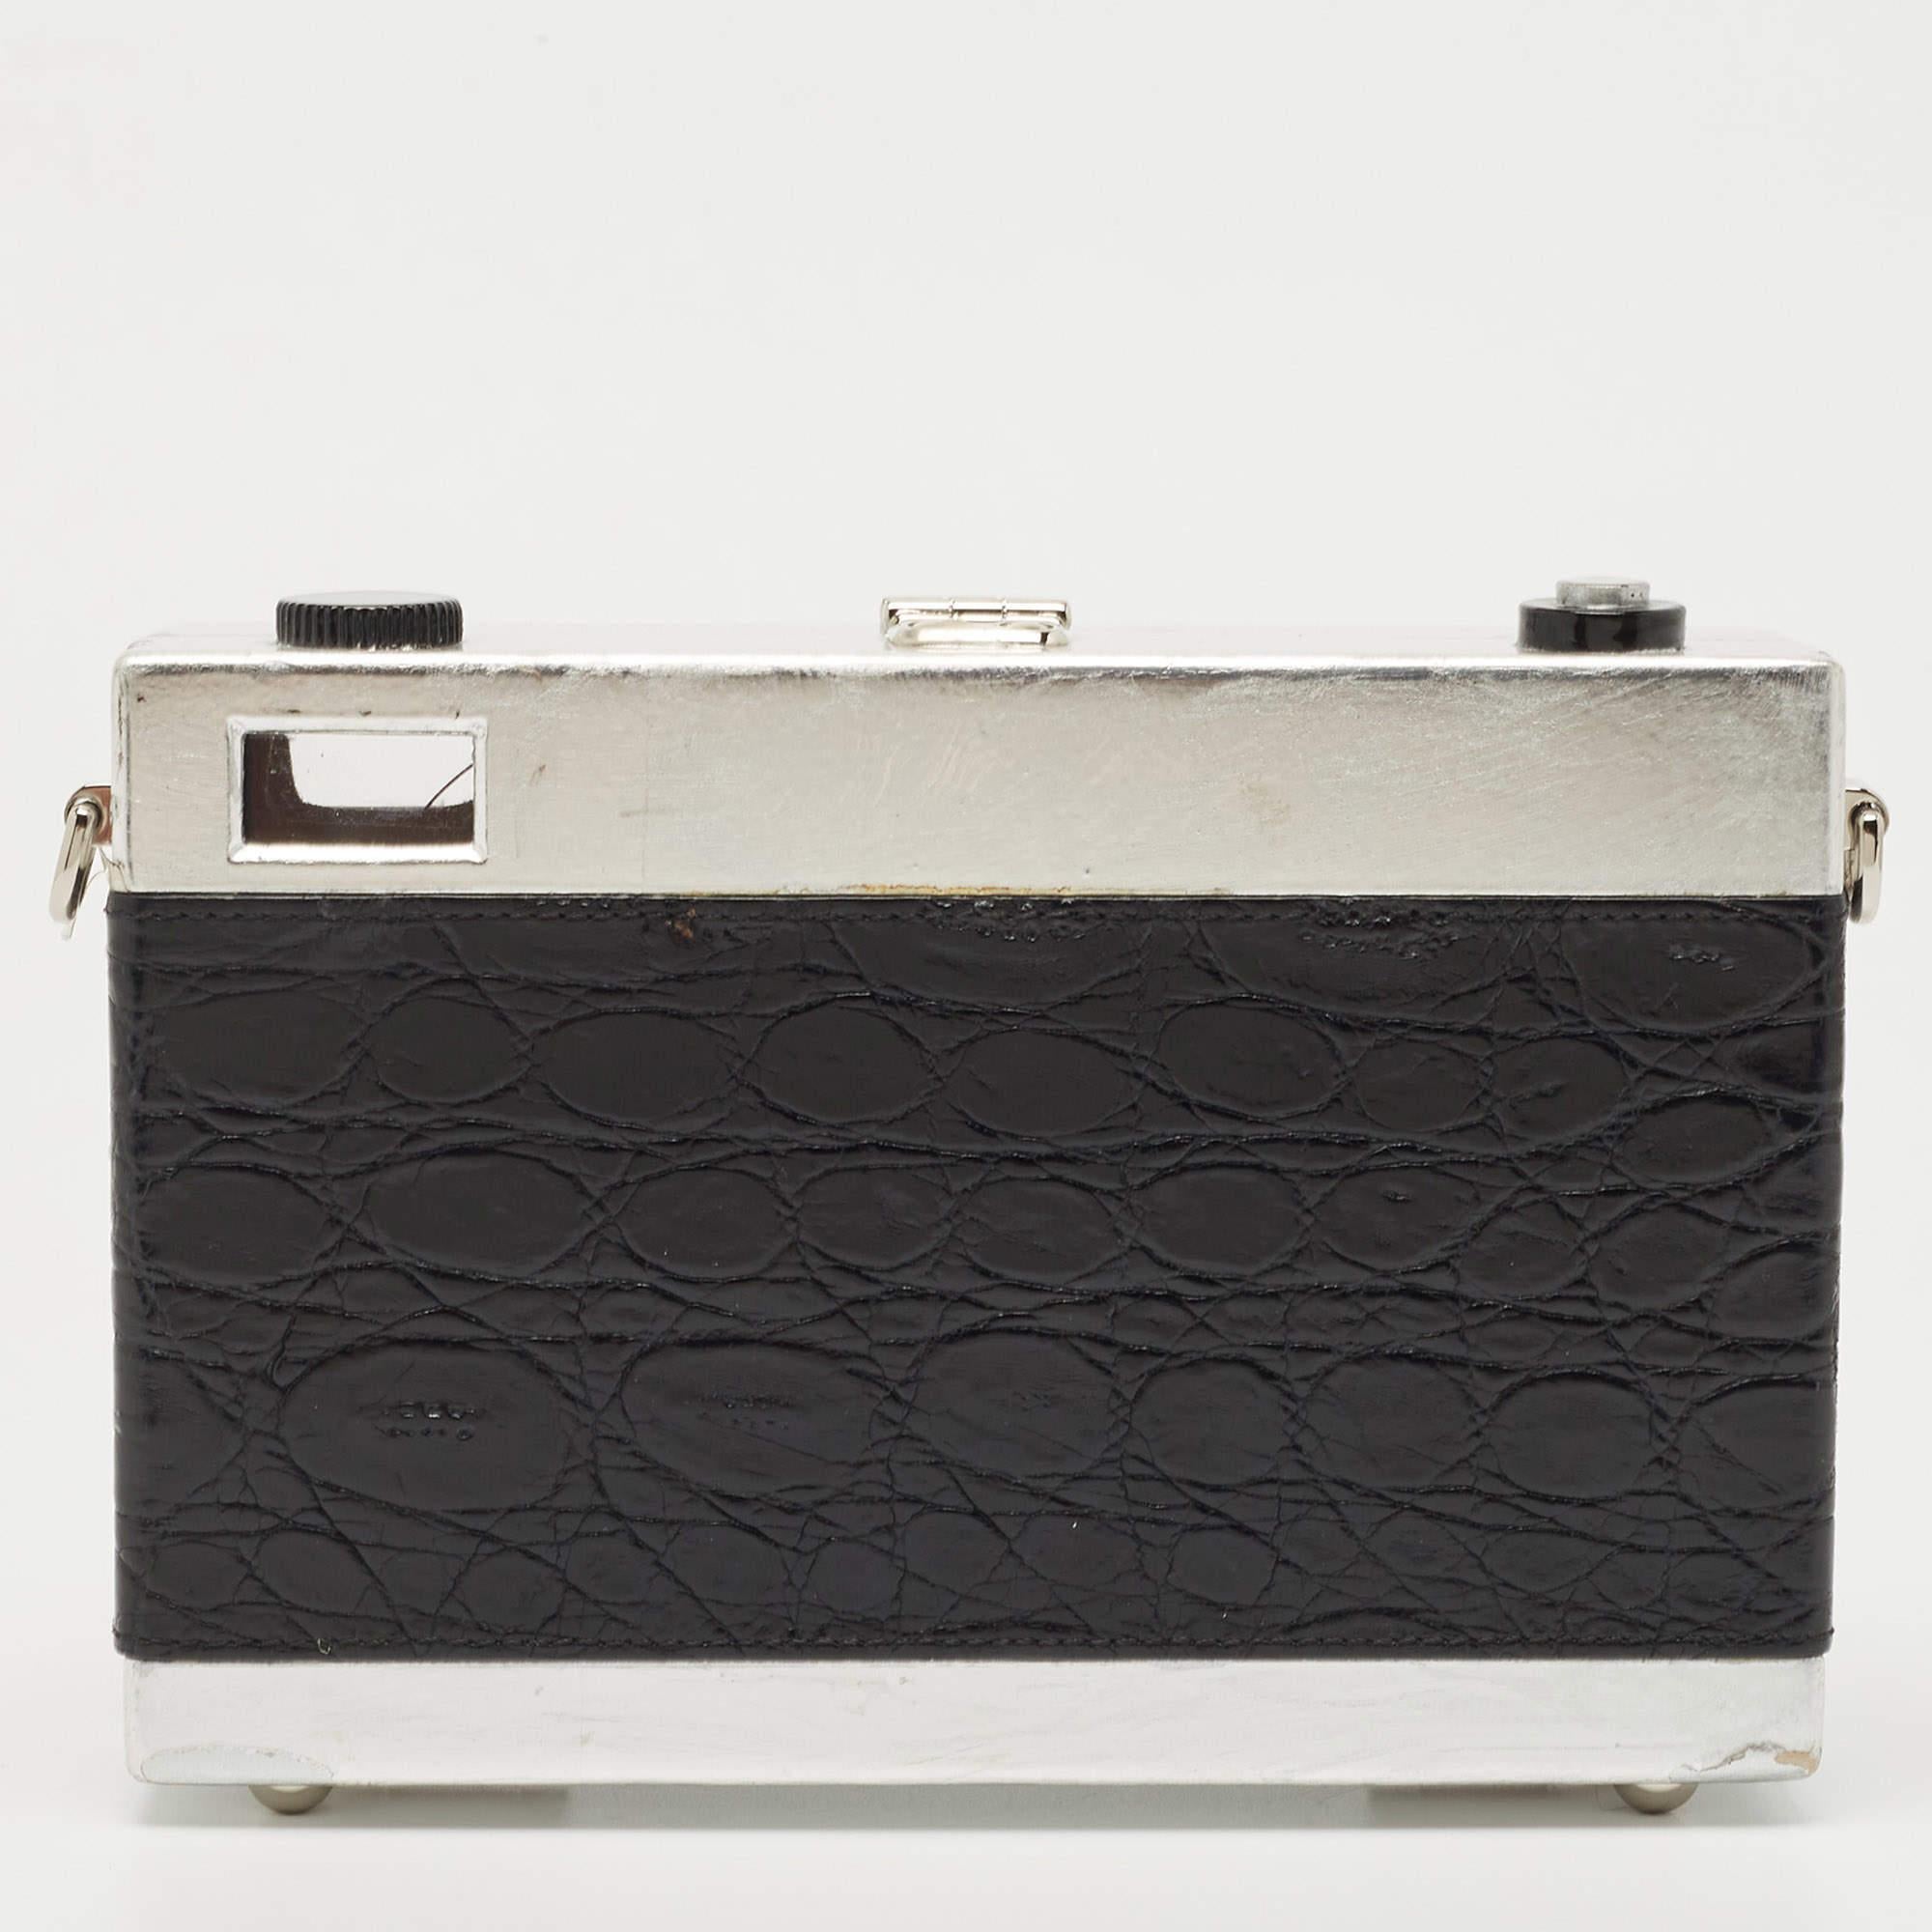 Dolce & Gabbana Black/Silver Croc Embossed and Leather Camera Case Shoulder Bag 13